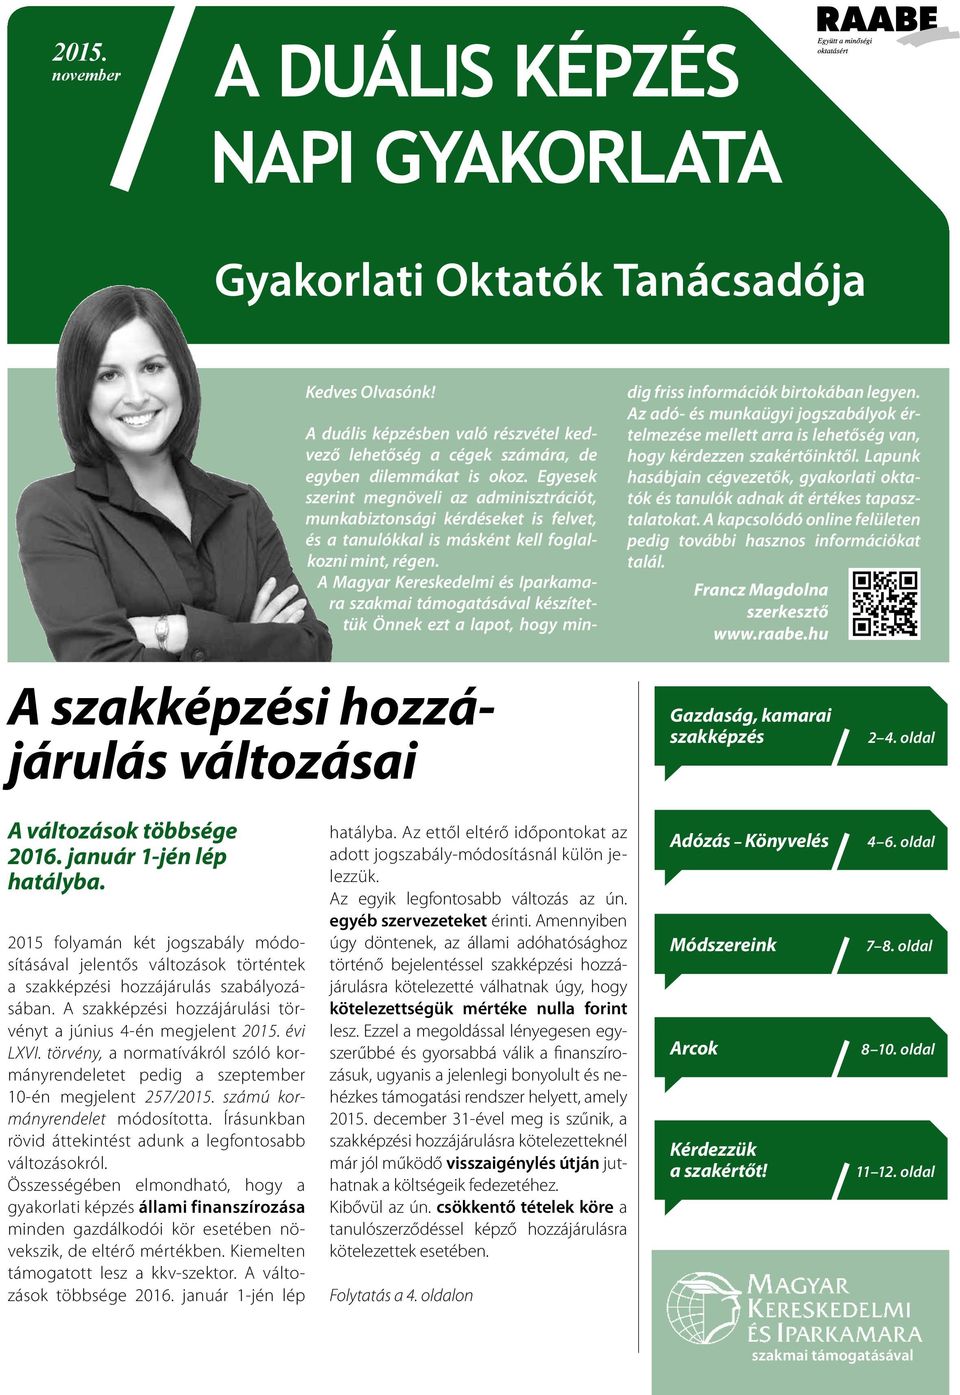 A Magyar Kereskedelmi és Iparkamara szakmai támogatásával készítettük Önnek ezt a lapot, hogy min- dig friss információk birtokában legyen.